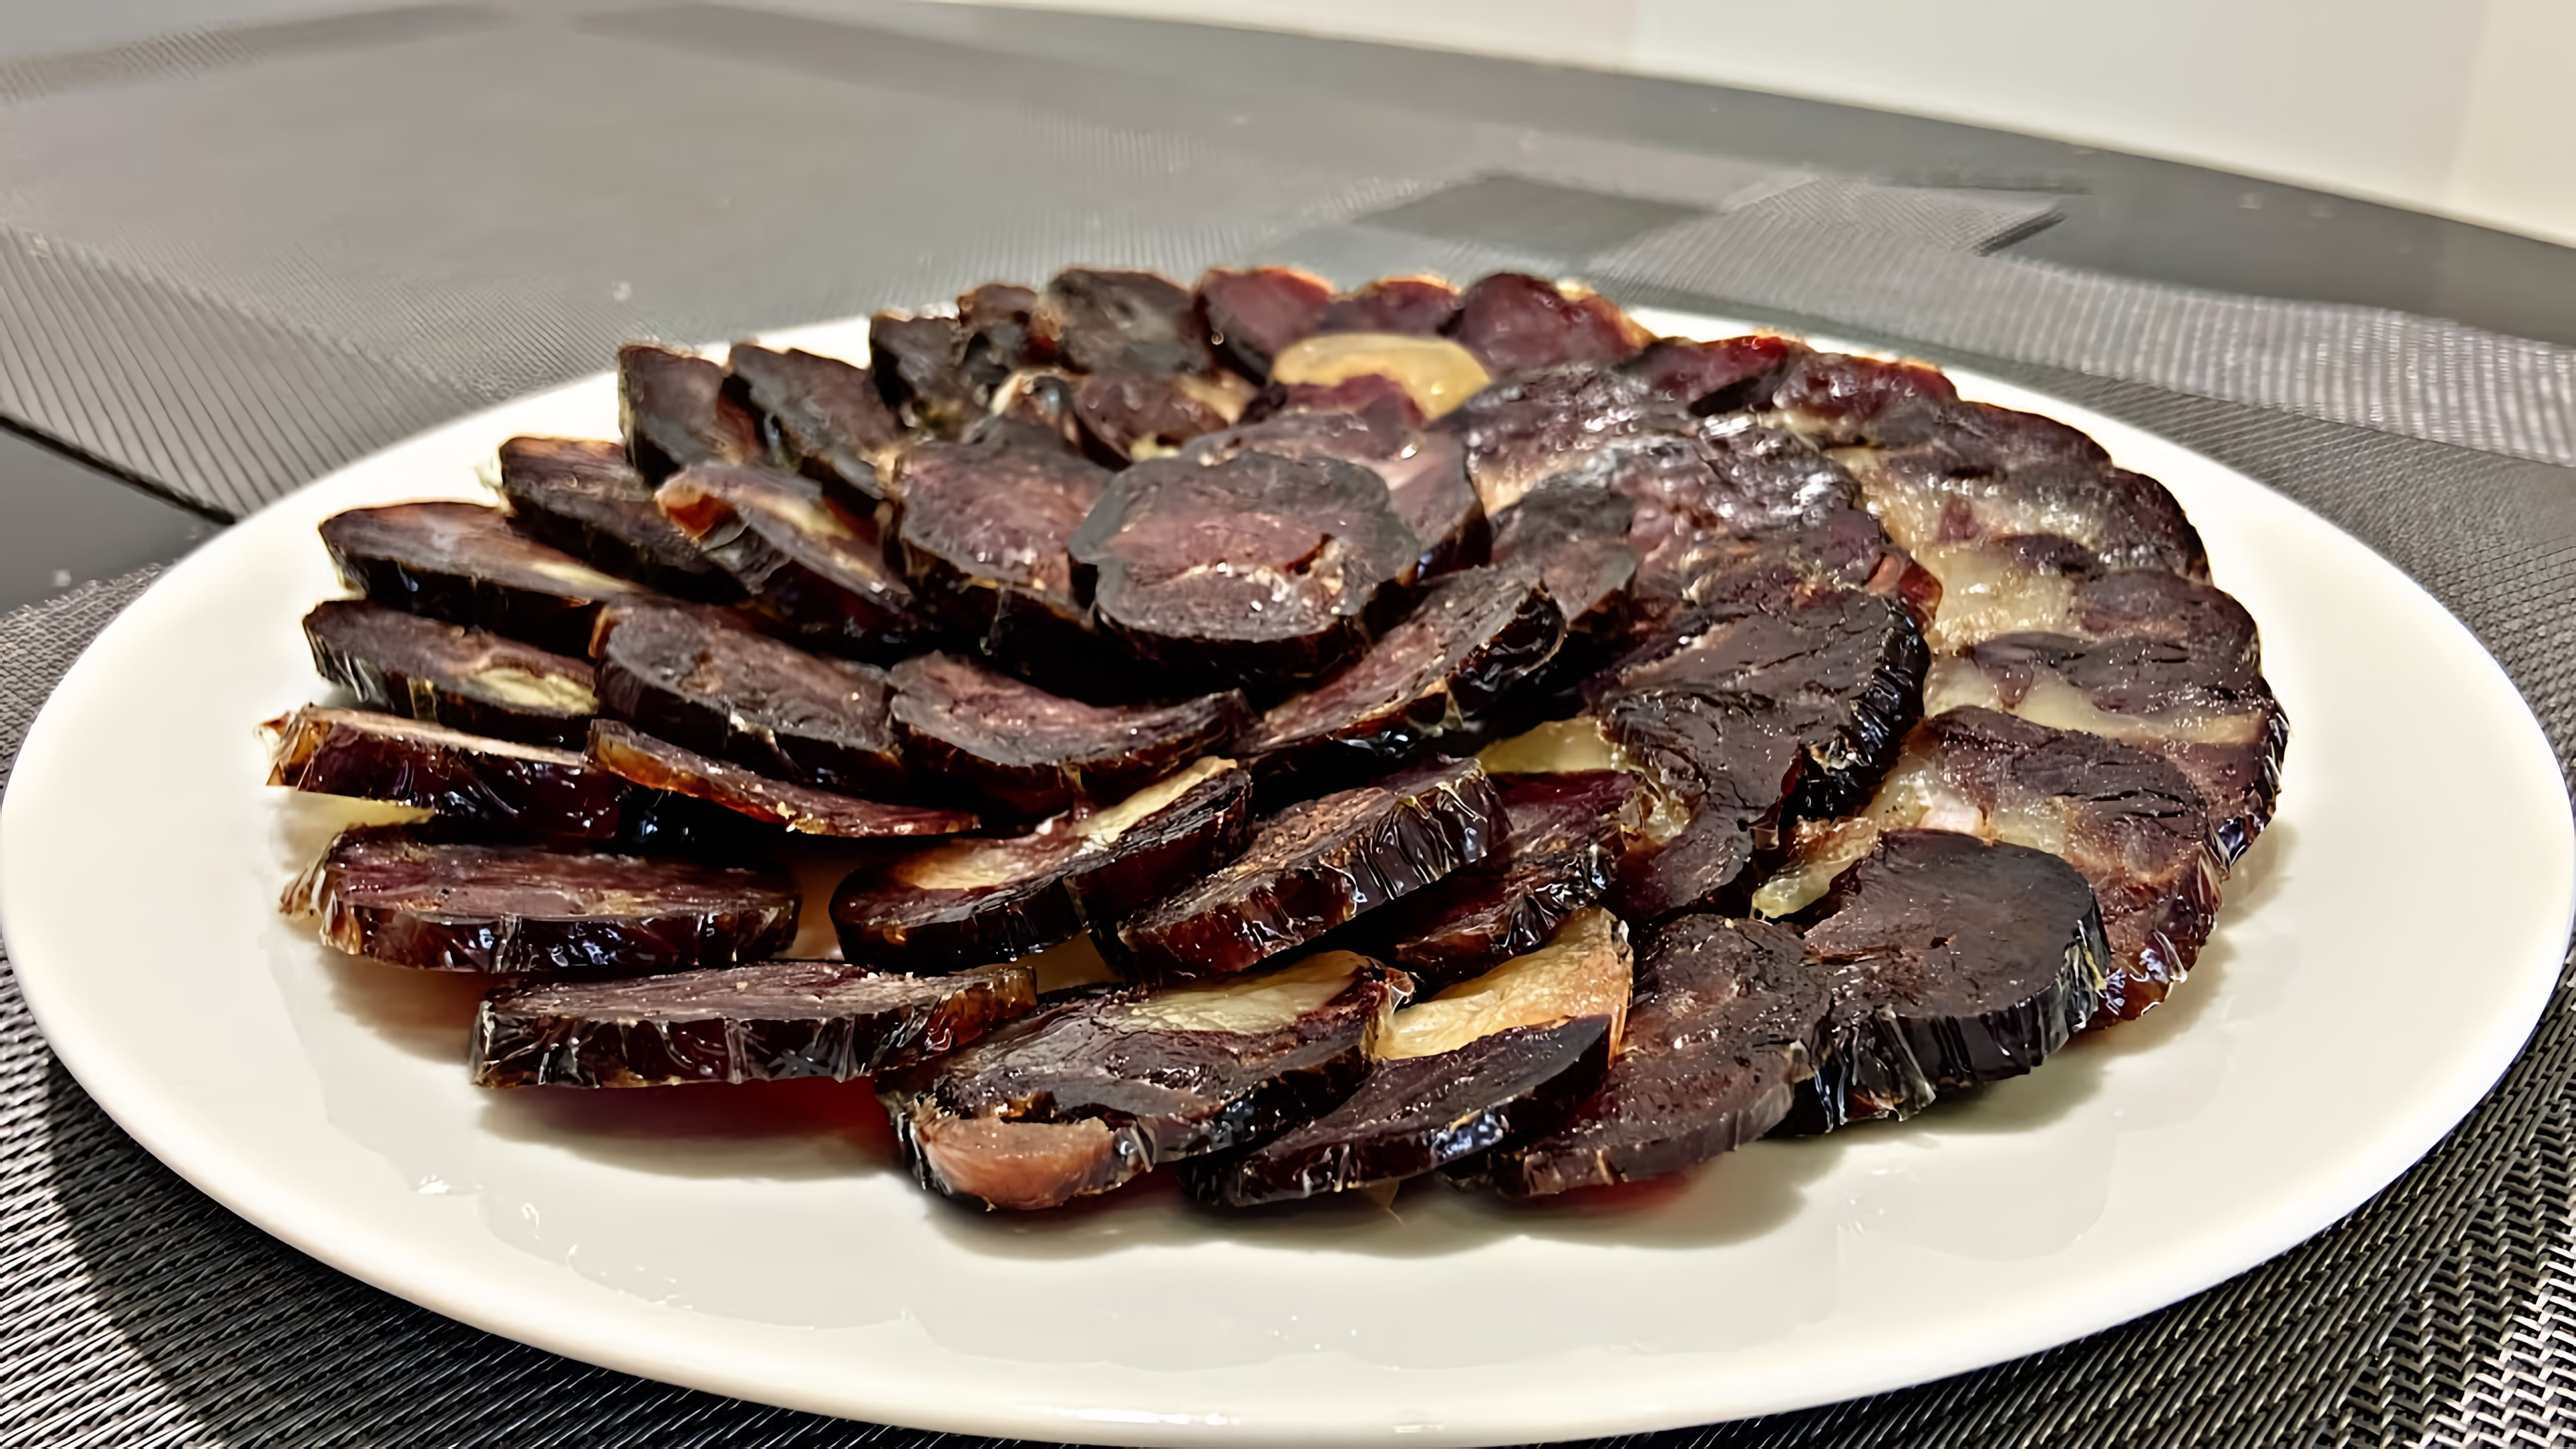 В данном видео-ролике рассказывается о традиционном казахском блюде - казылыке, также известном как казы или сыровяленая колбаса из конины